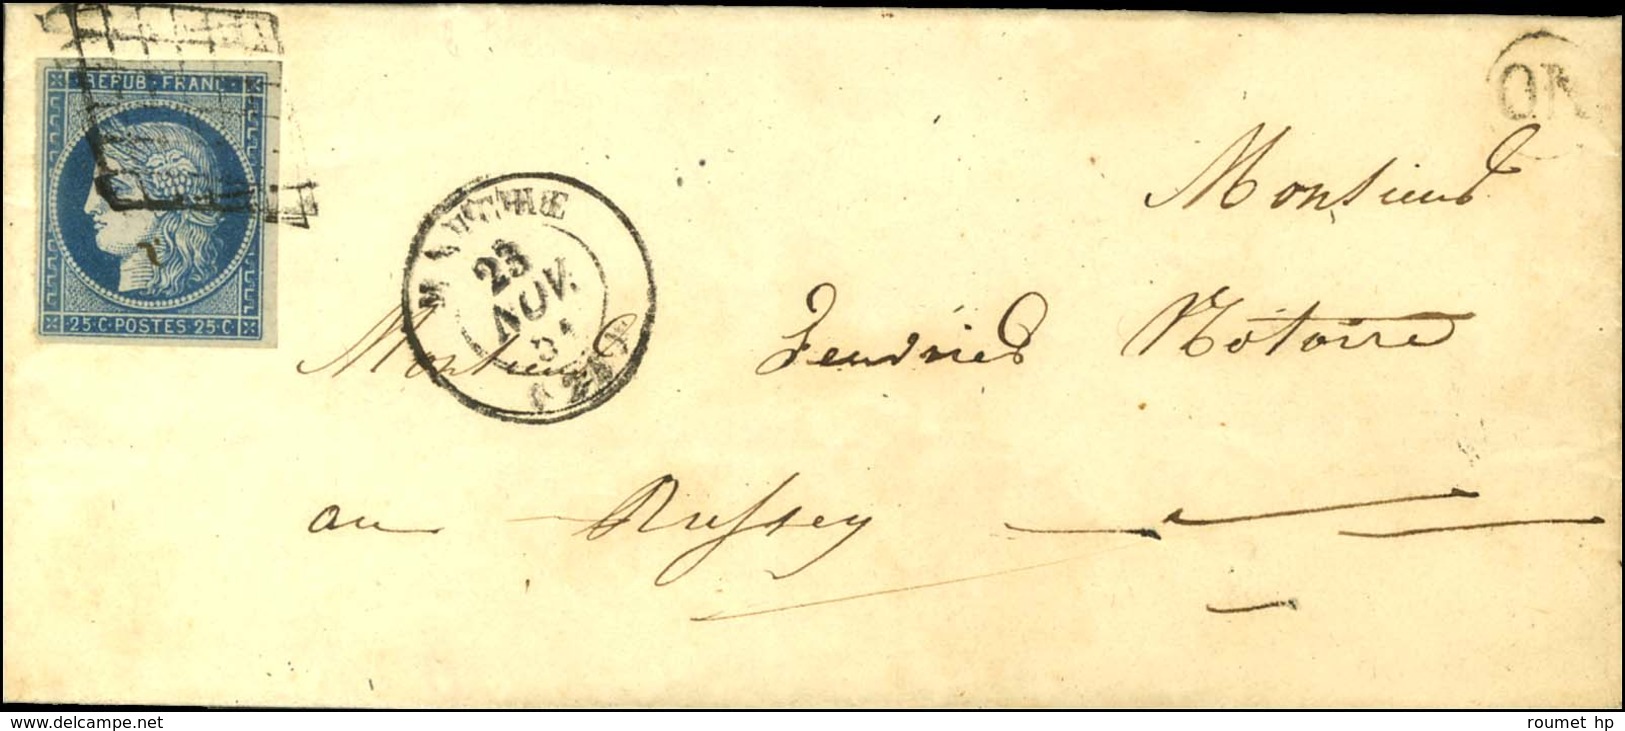 Grille / N° 4 Càd T 15 MAICHE (24), Au Recto OR Sur Lettre Avec Texte Daté De Damprichard. 1851. - TB / SUP. - 1849-1850 Ceres